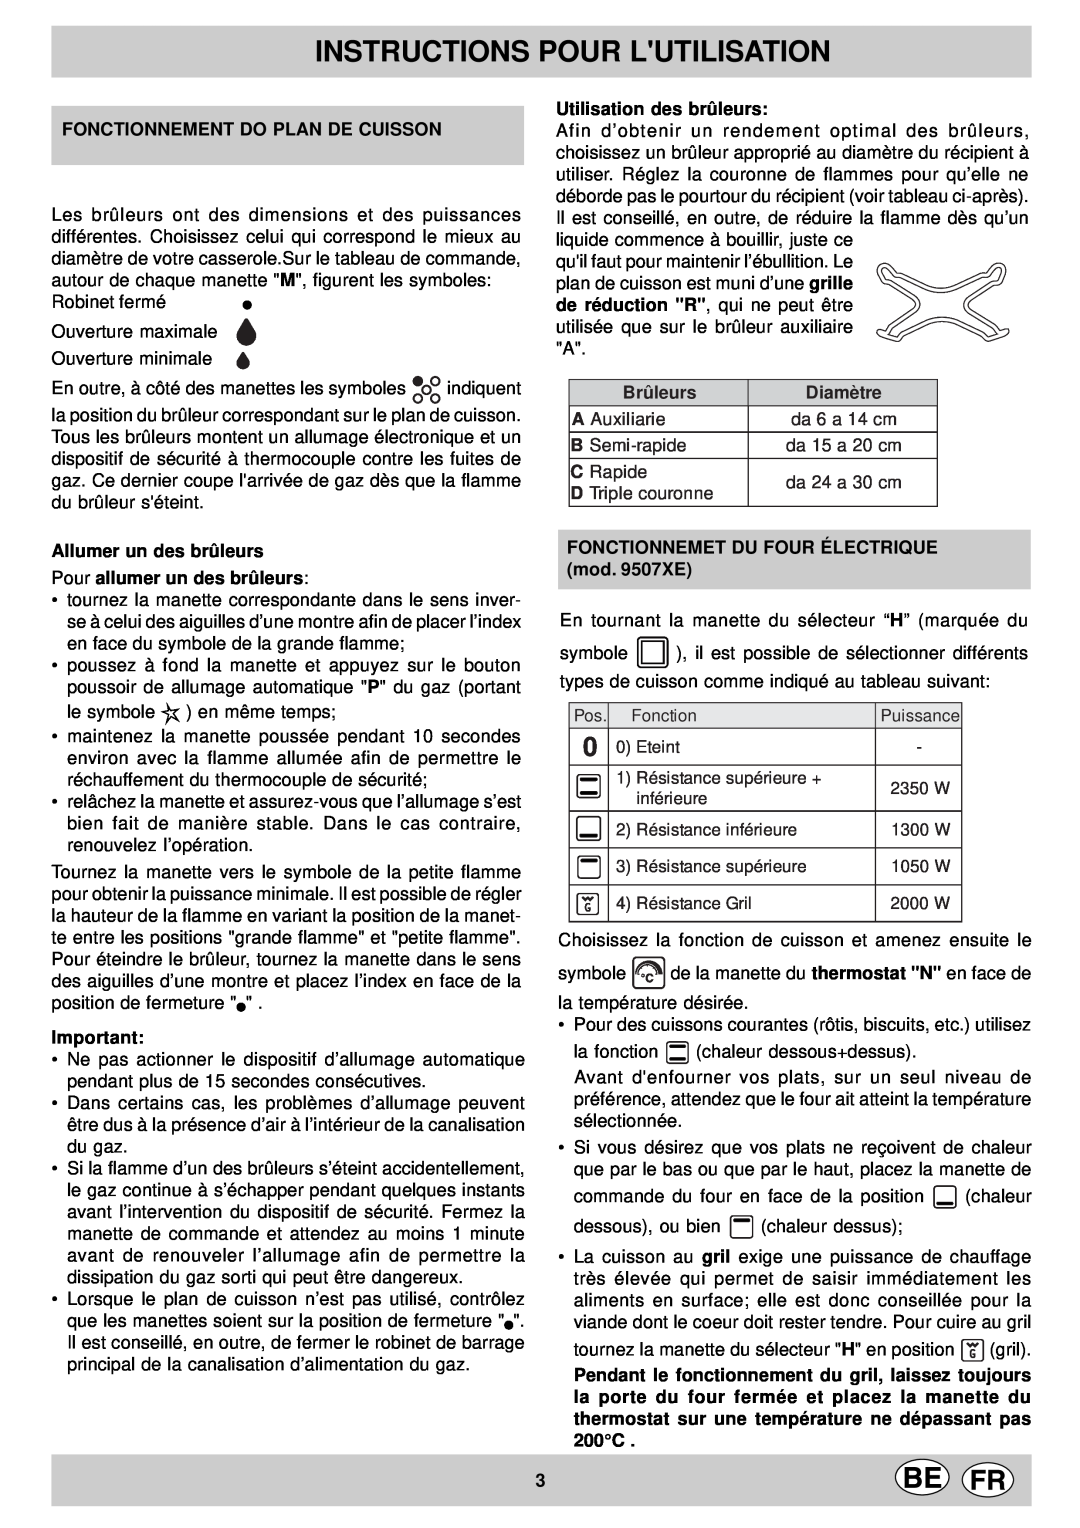 Indesit KP 9507 EB Instructions Pour Lutilisation, Fonctionnement Do Plan De Cuisson, Utilisation des brûleurs, Brûleurs 